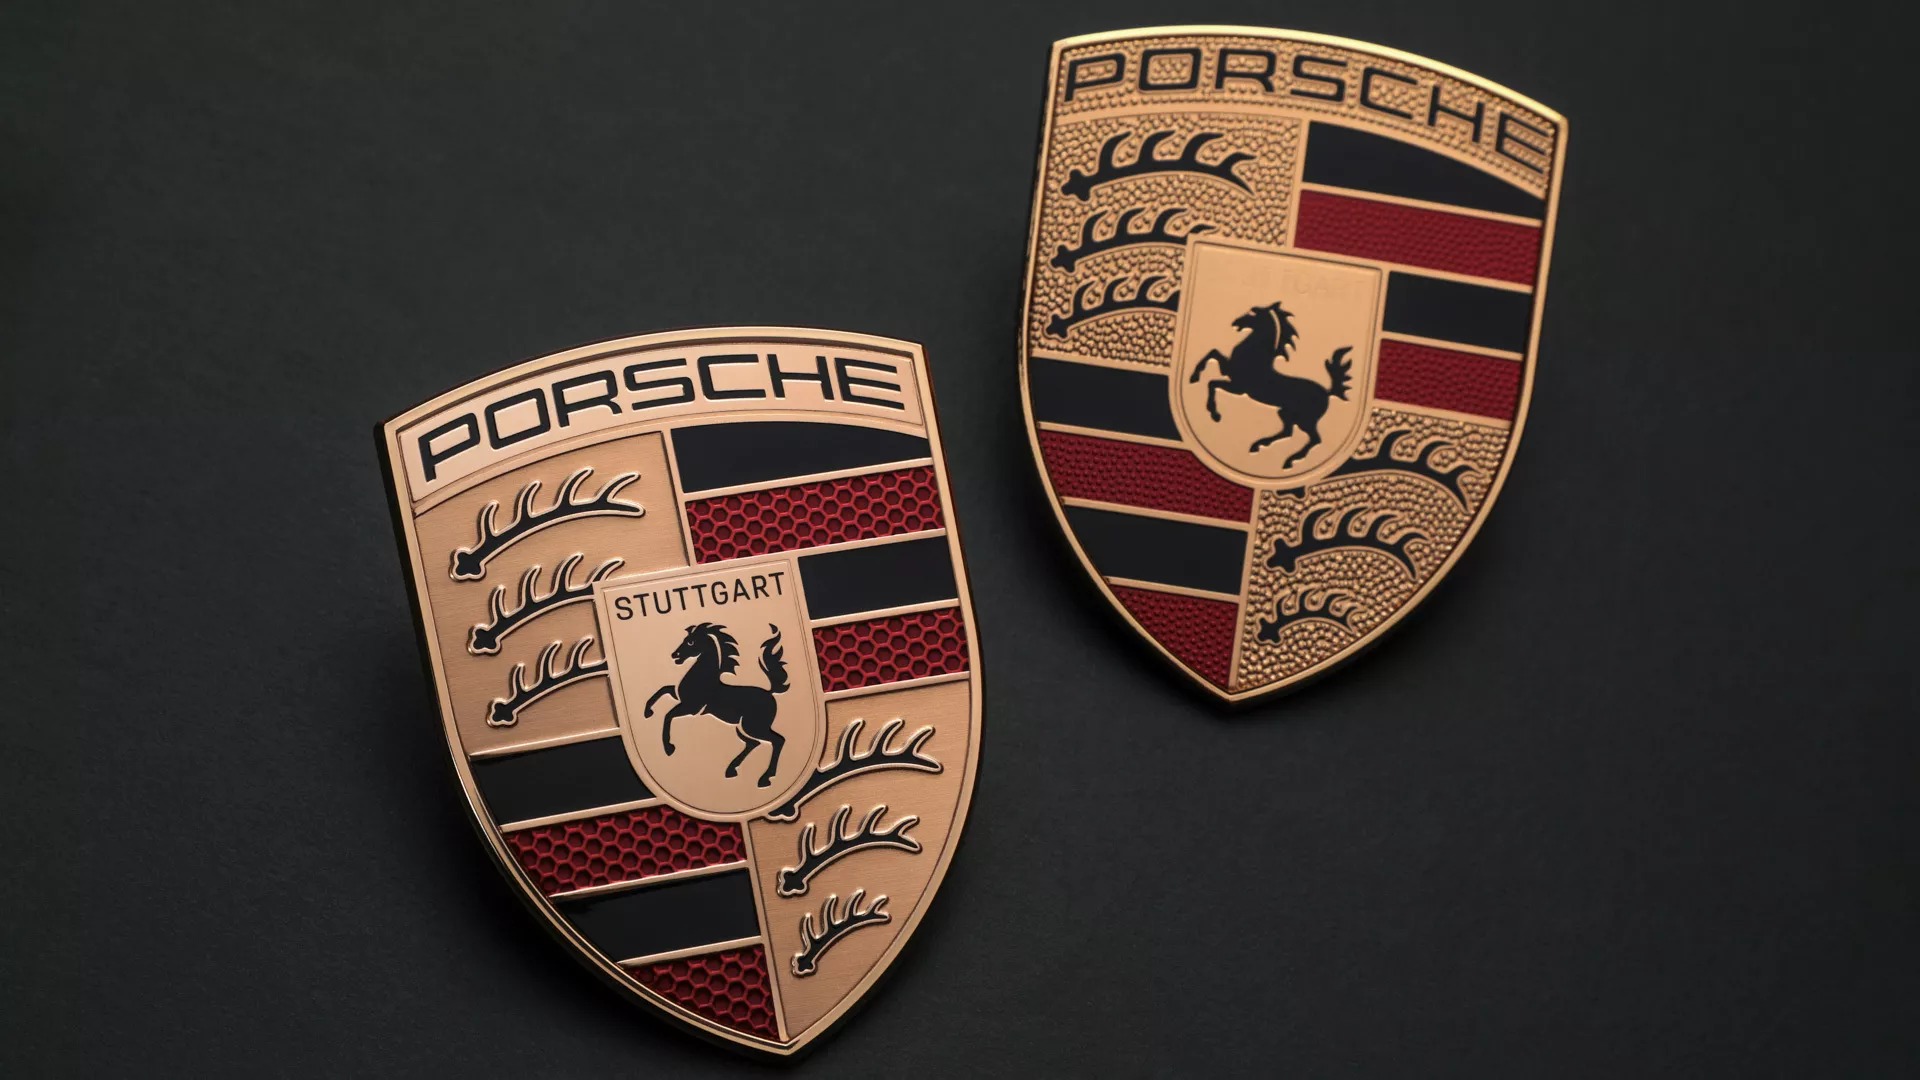 Porsche đổi logo, sẽ sử dụng bắt đầu từ Panamera đời mới ra mắt cuối năm - Ảnh 1.